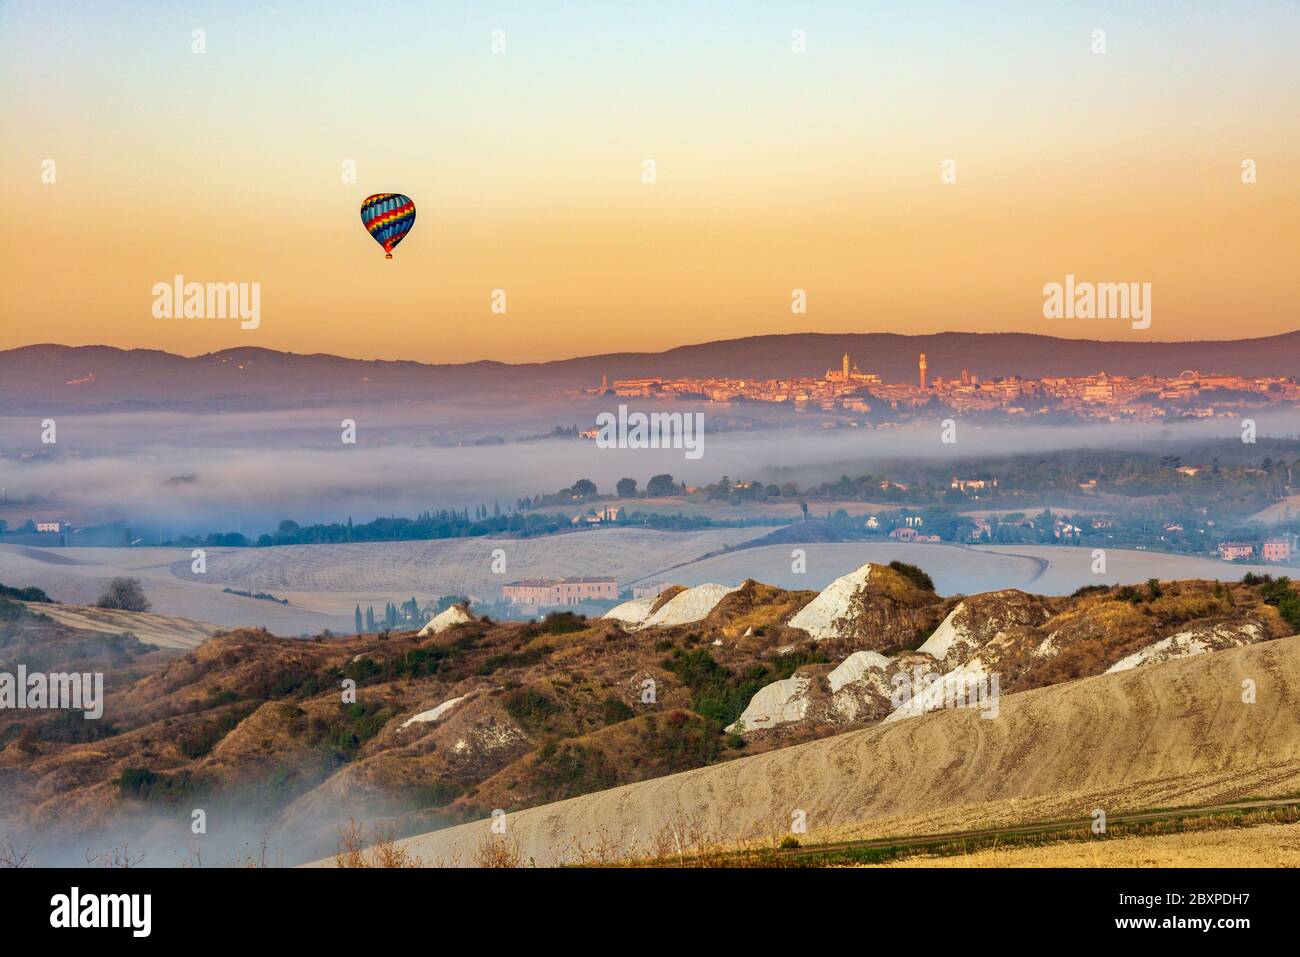 Un colorato pallone sospeso nell'aria che galleggia nel cielo di prima mattina tra il paesaggio delle crete senesi e la città di Siena sullo sfondo Foto Stock